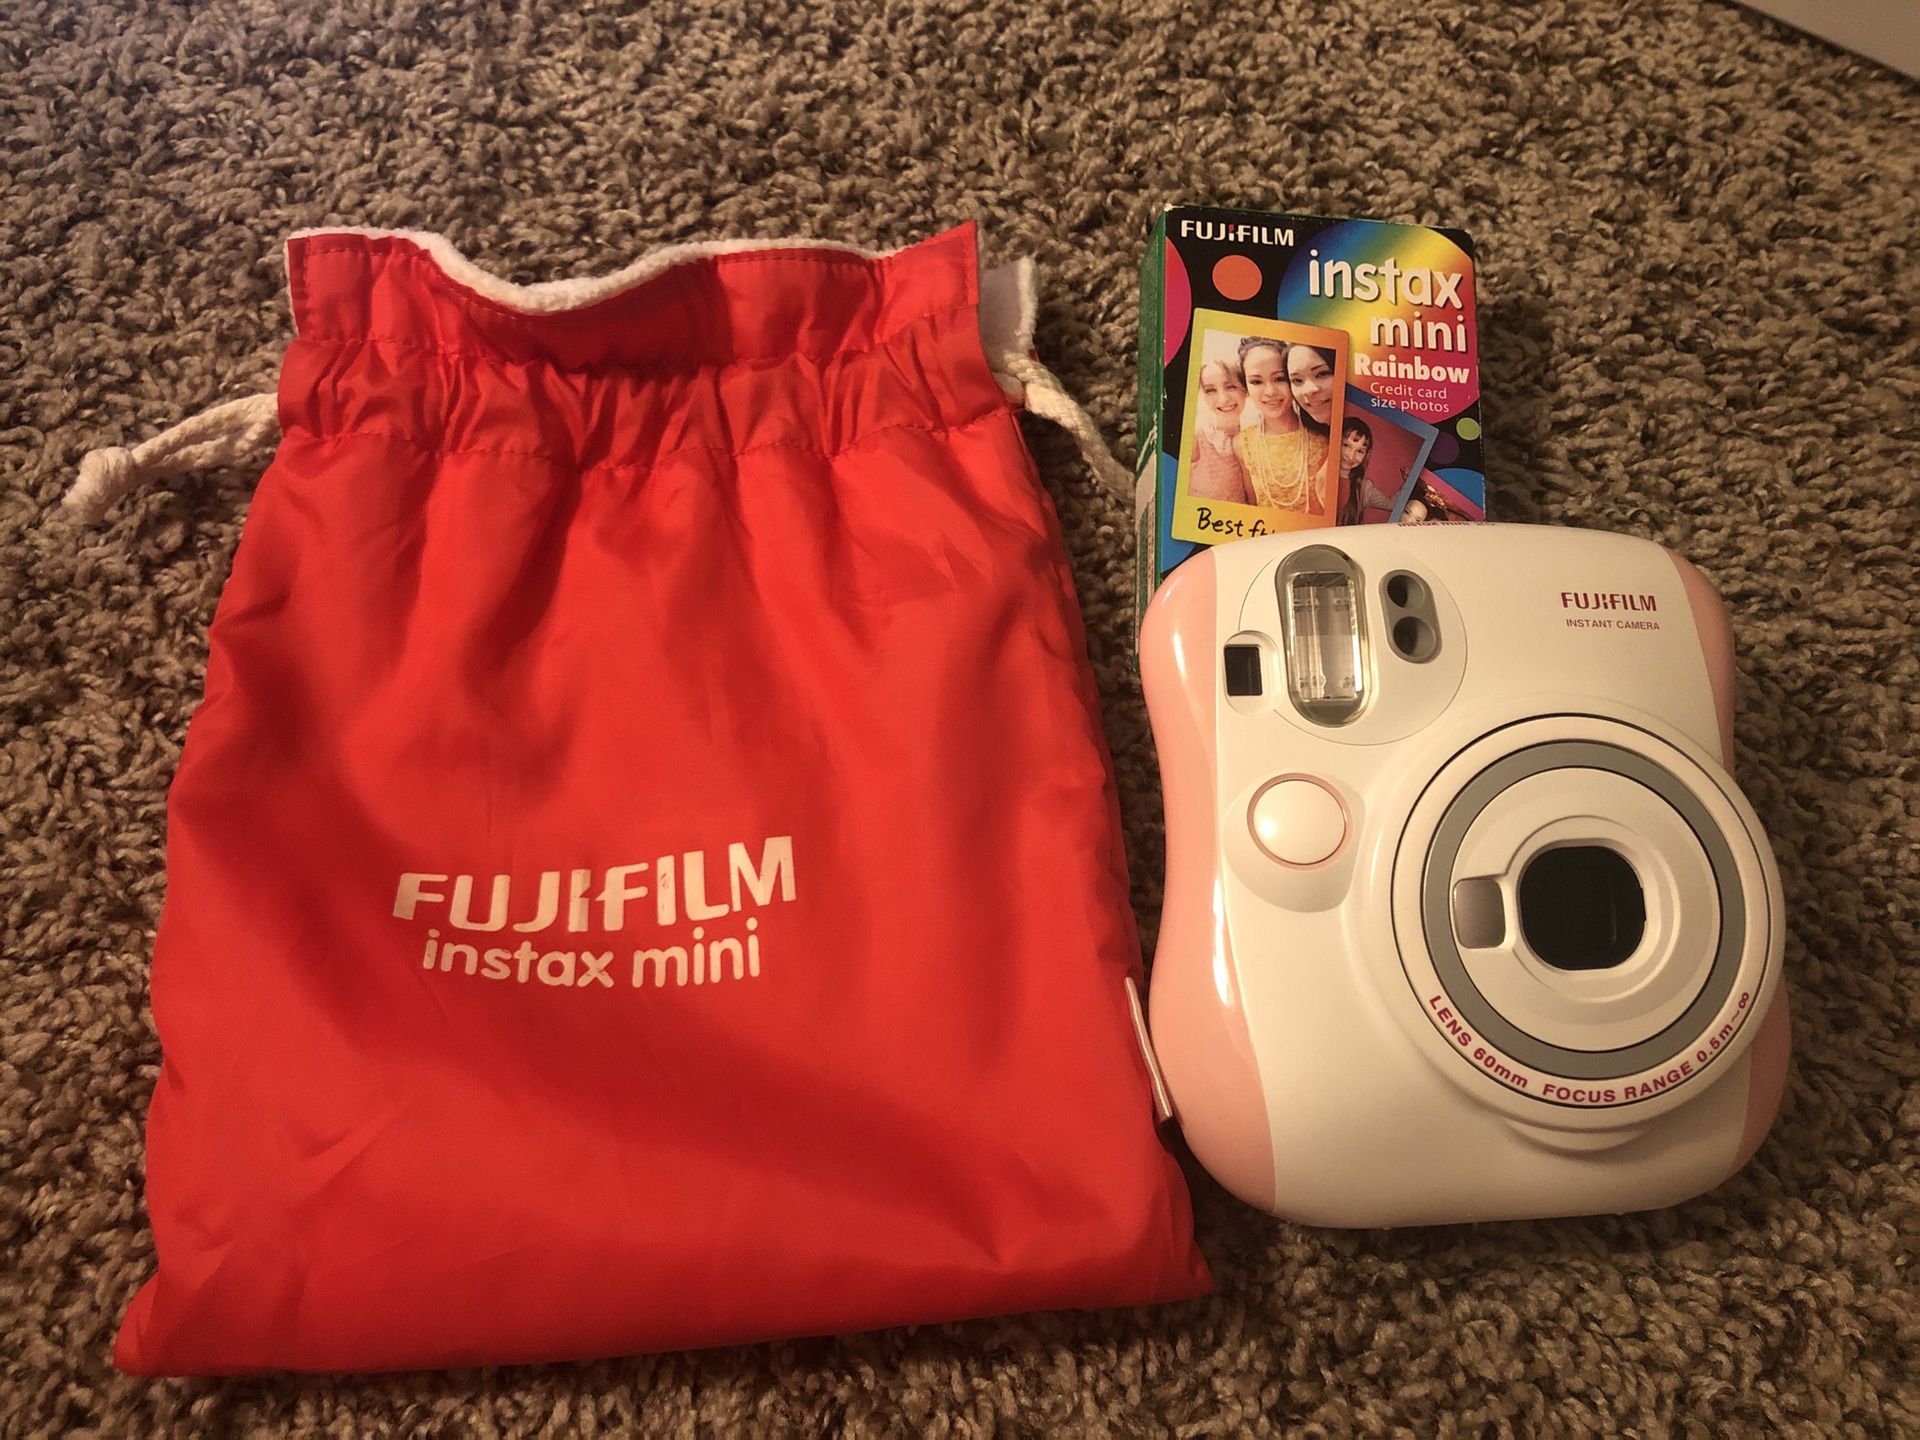 Instant camera, Fuji film. With 20 pics sheets